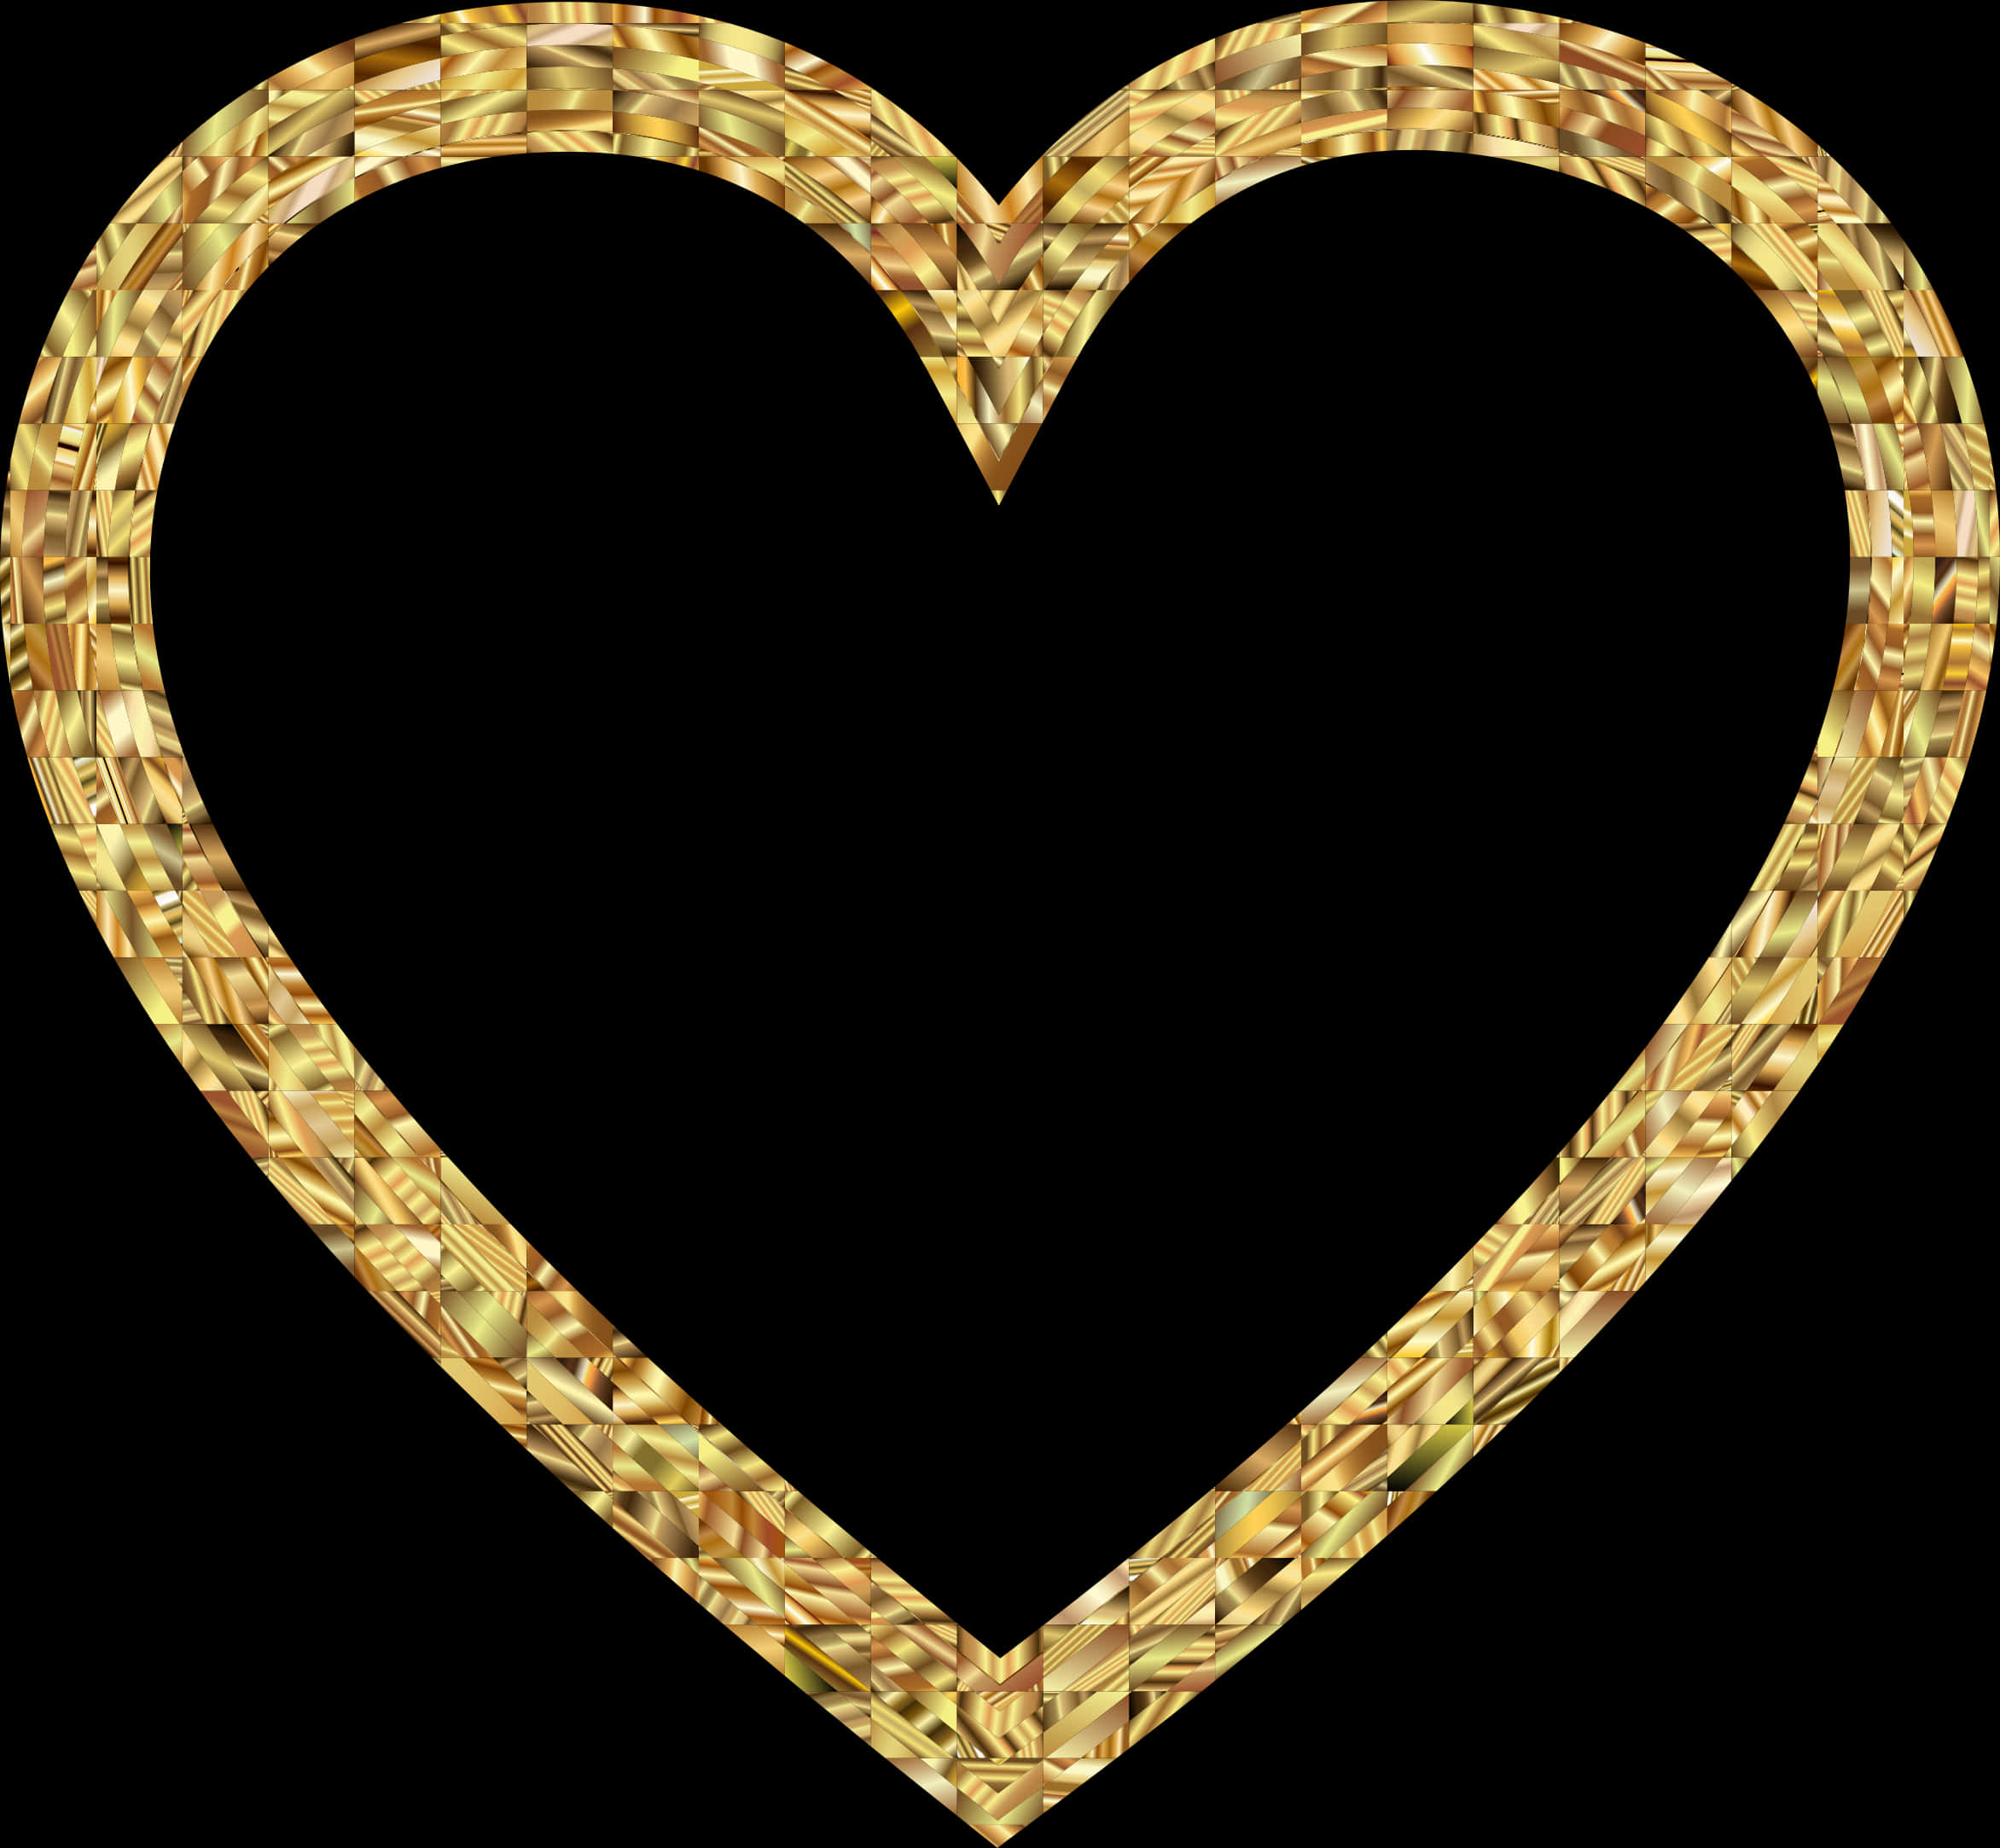 Золотое сердце